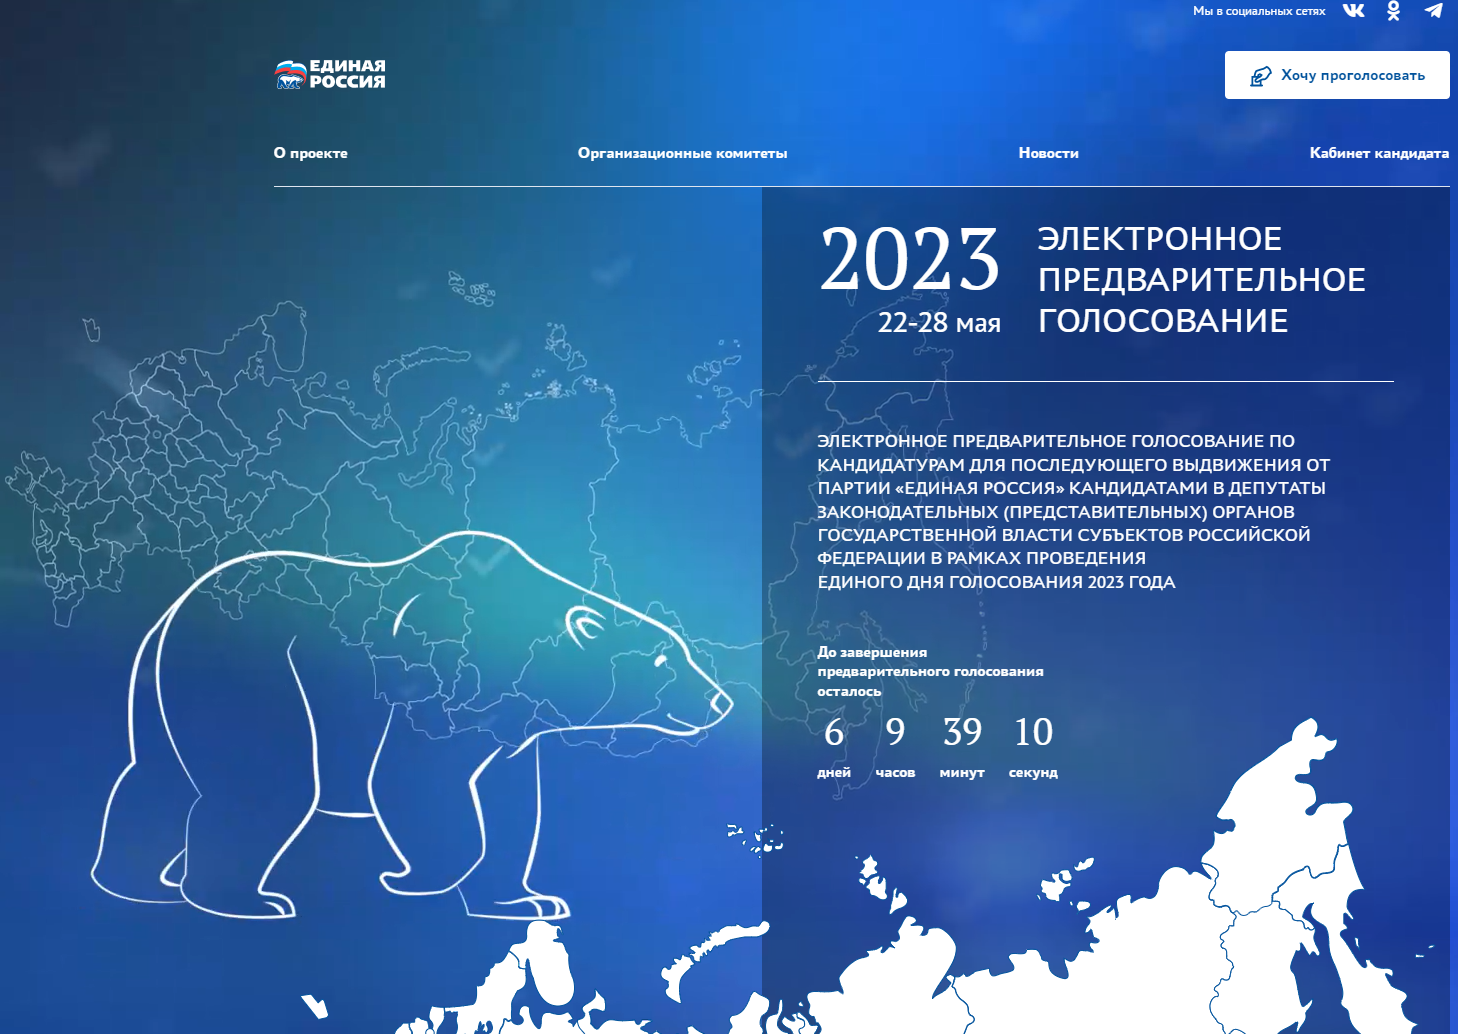 «Цифровая Россия» объявляет конкурс - Поиск уязвимостей электронного предварительного голосования